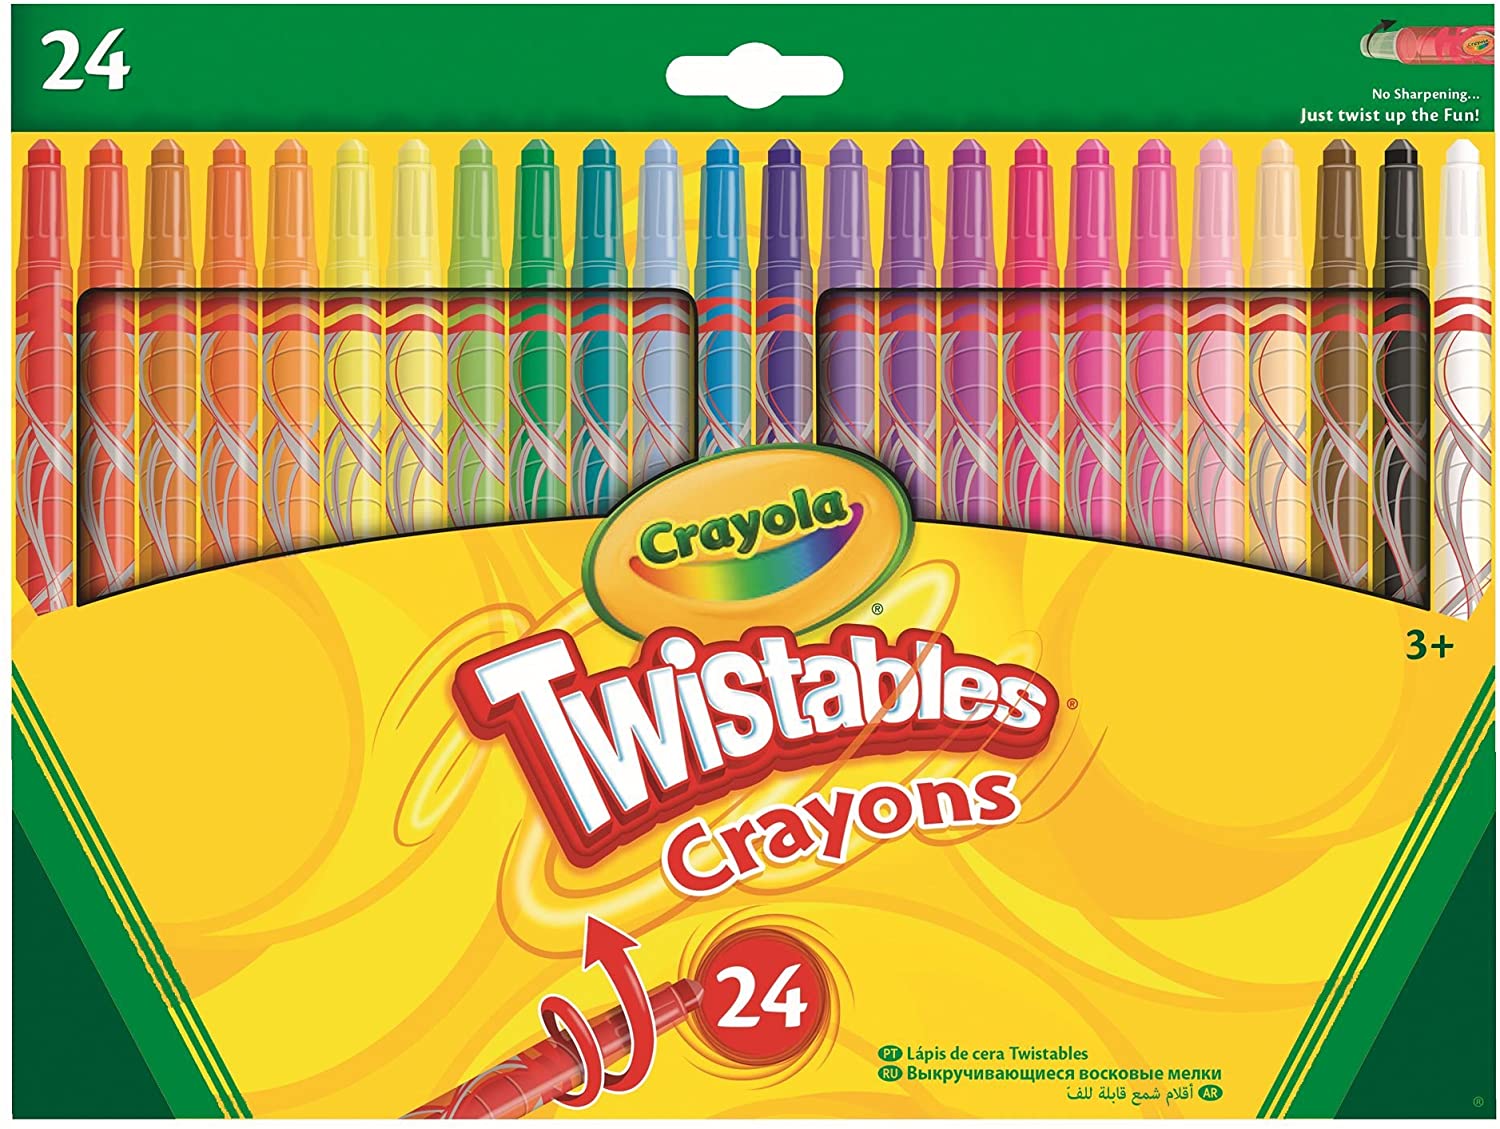 Crayola Twistables Crayons 24